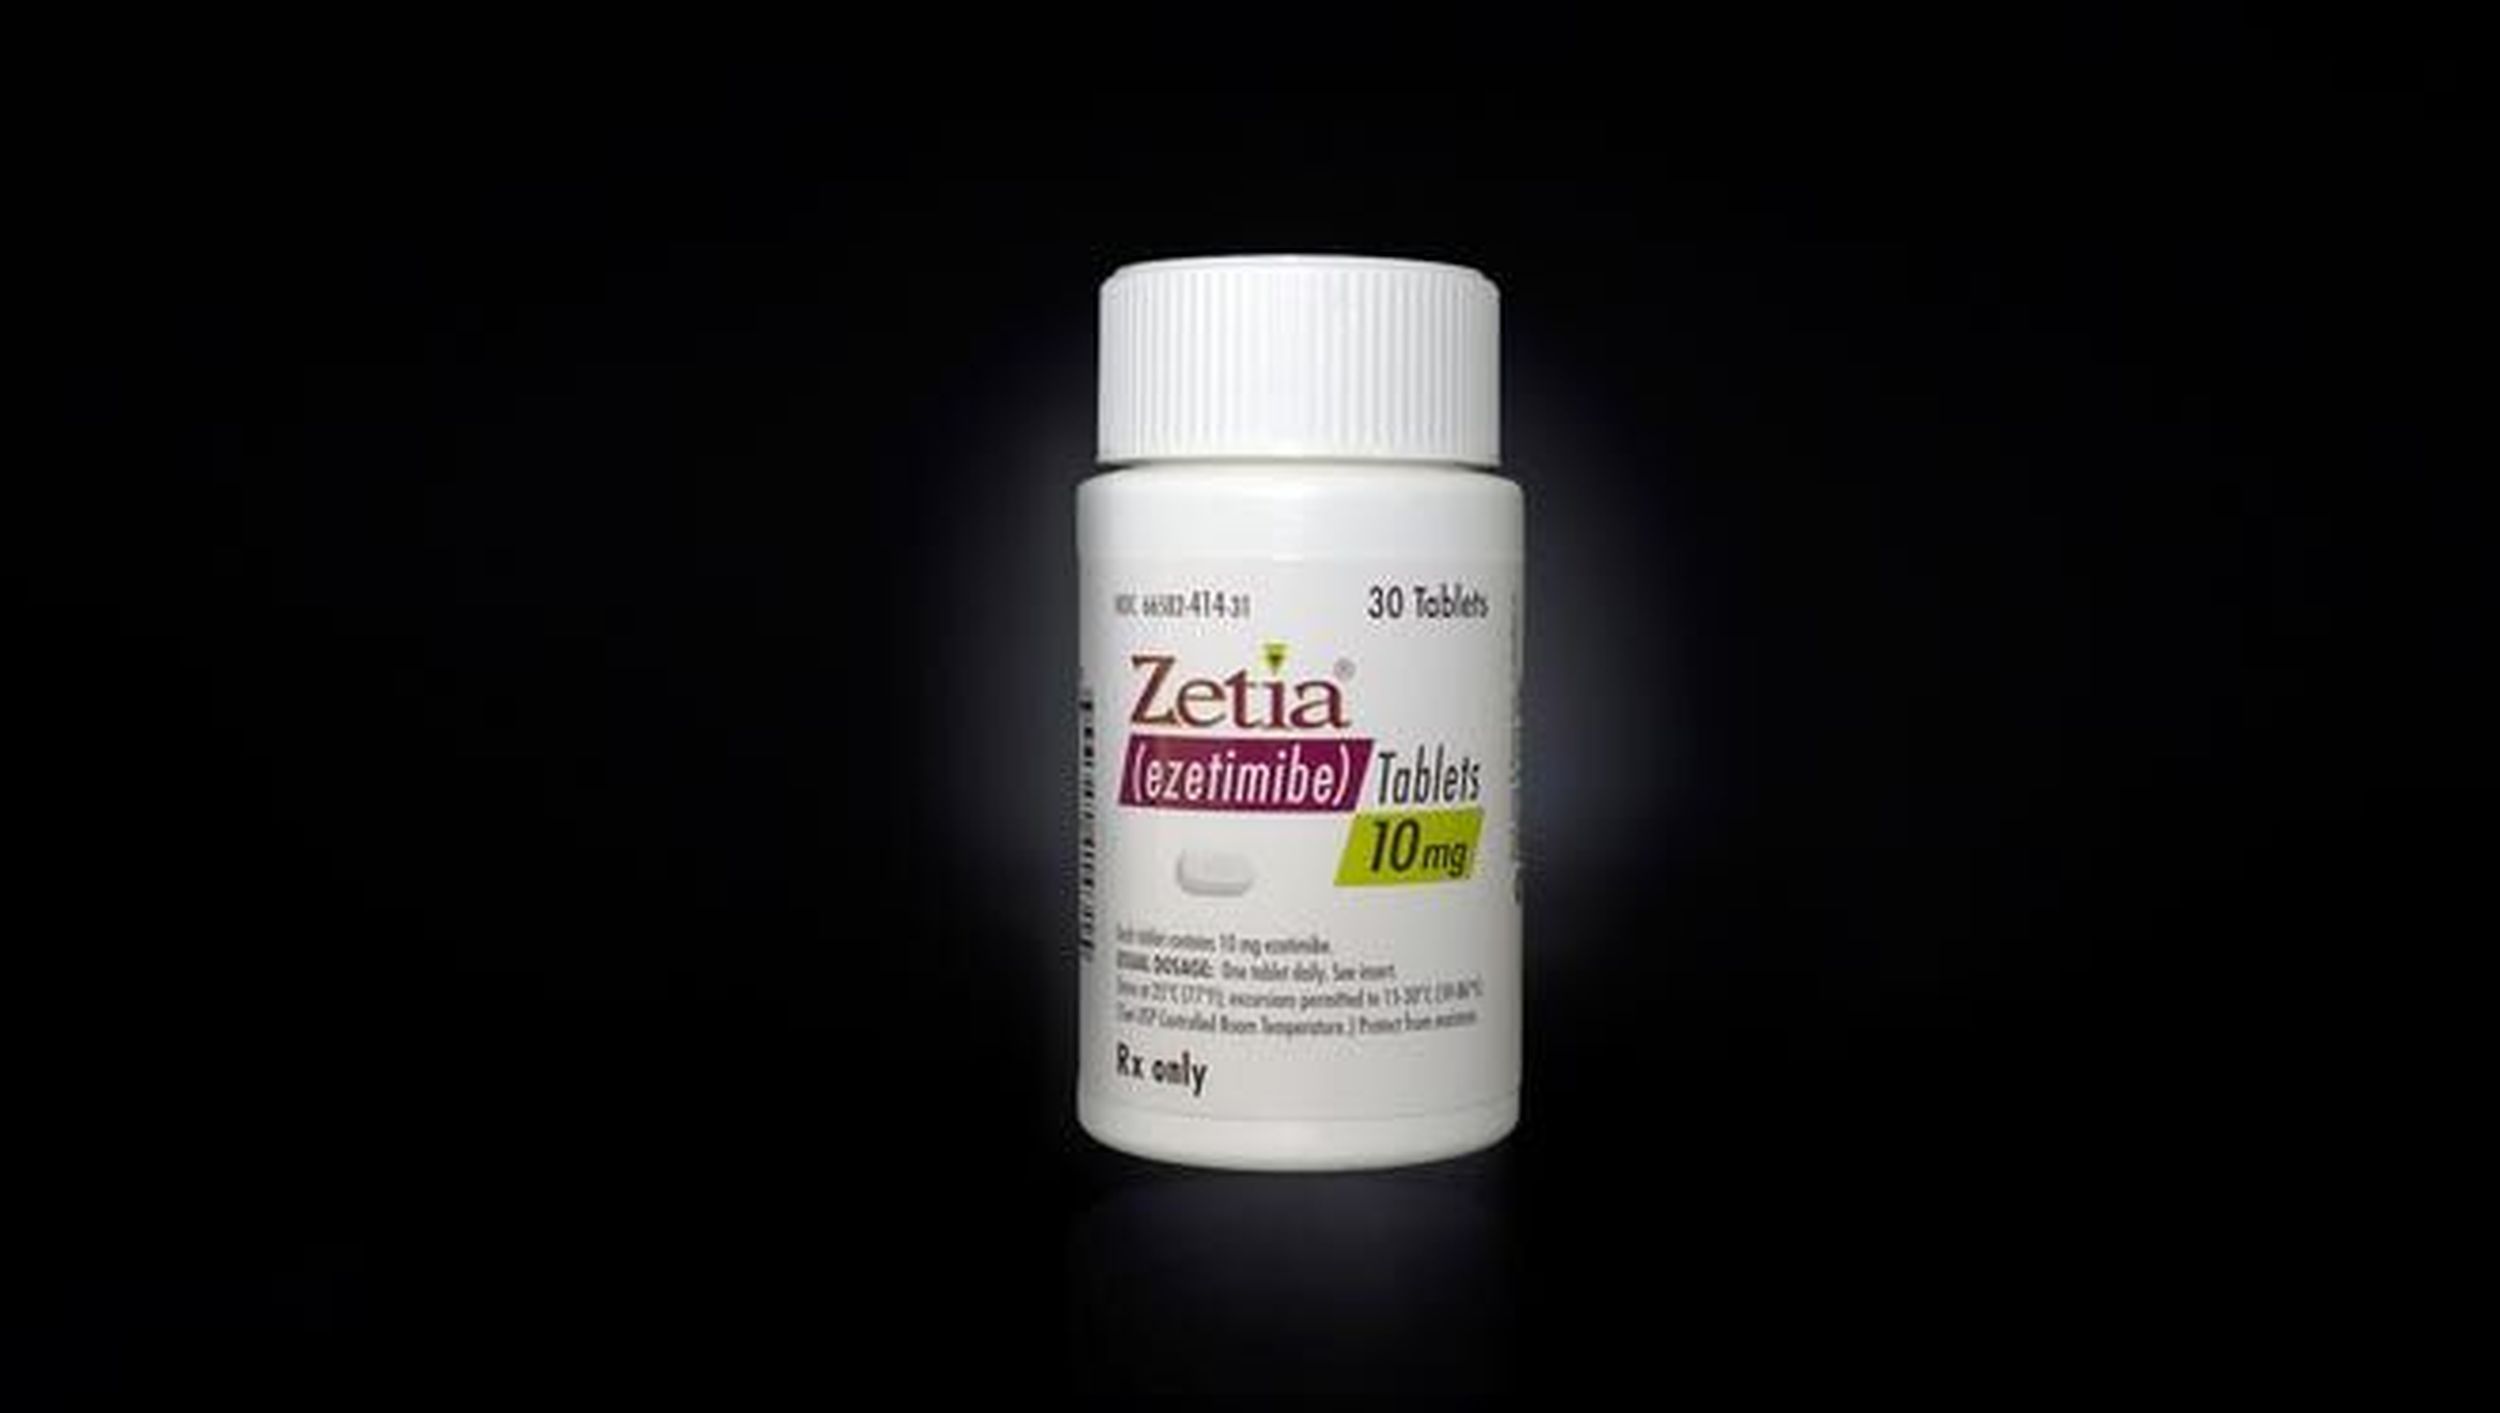 generic zetia by endo pharma